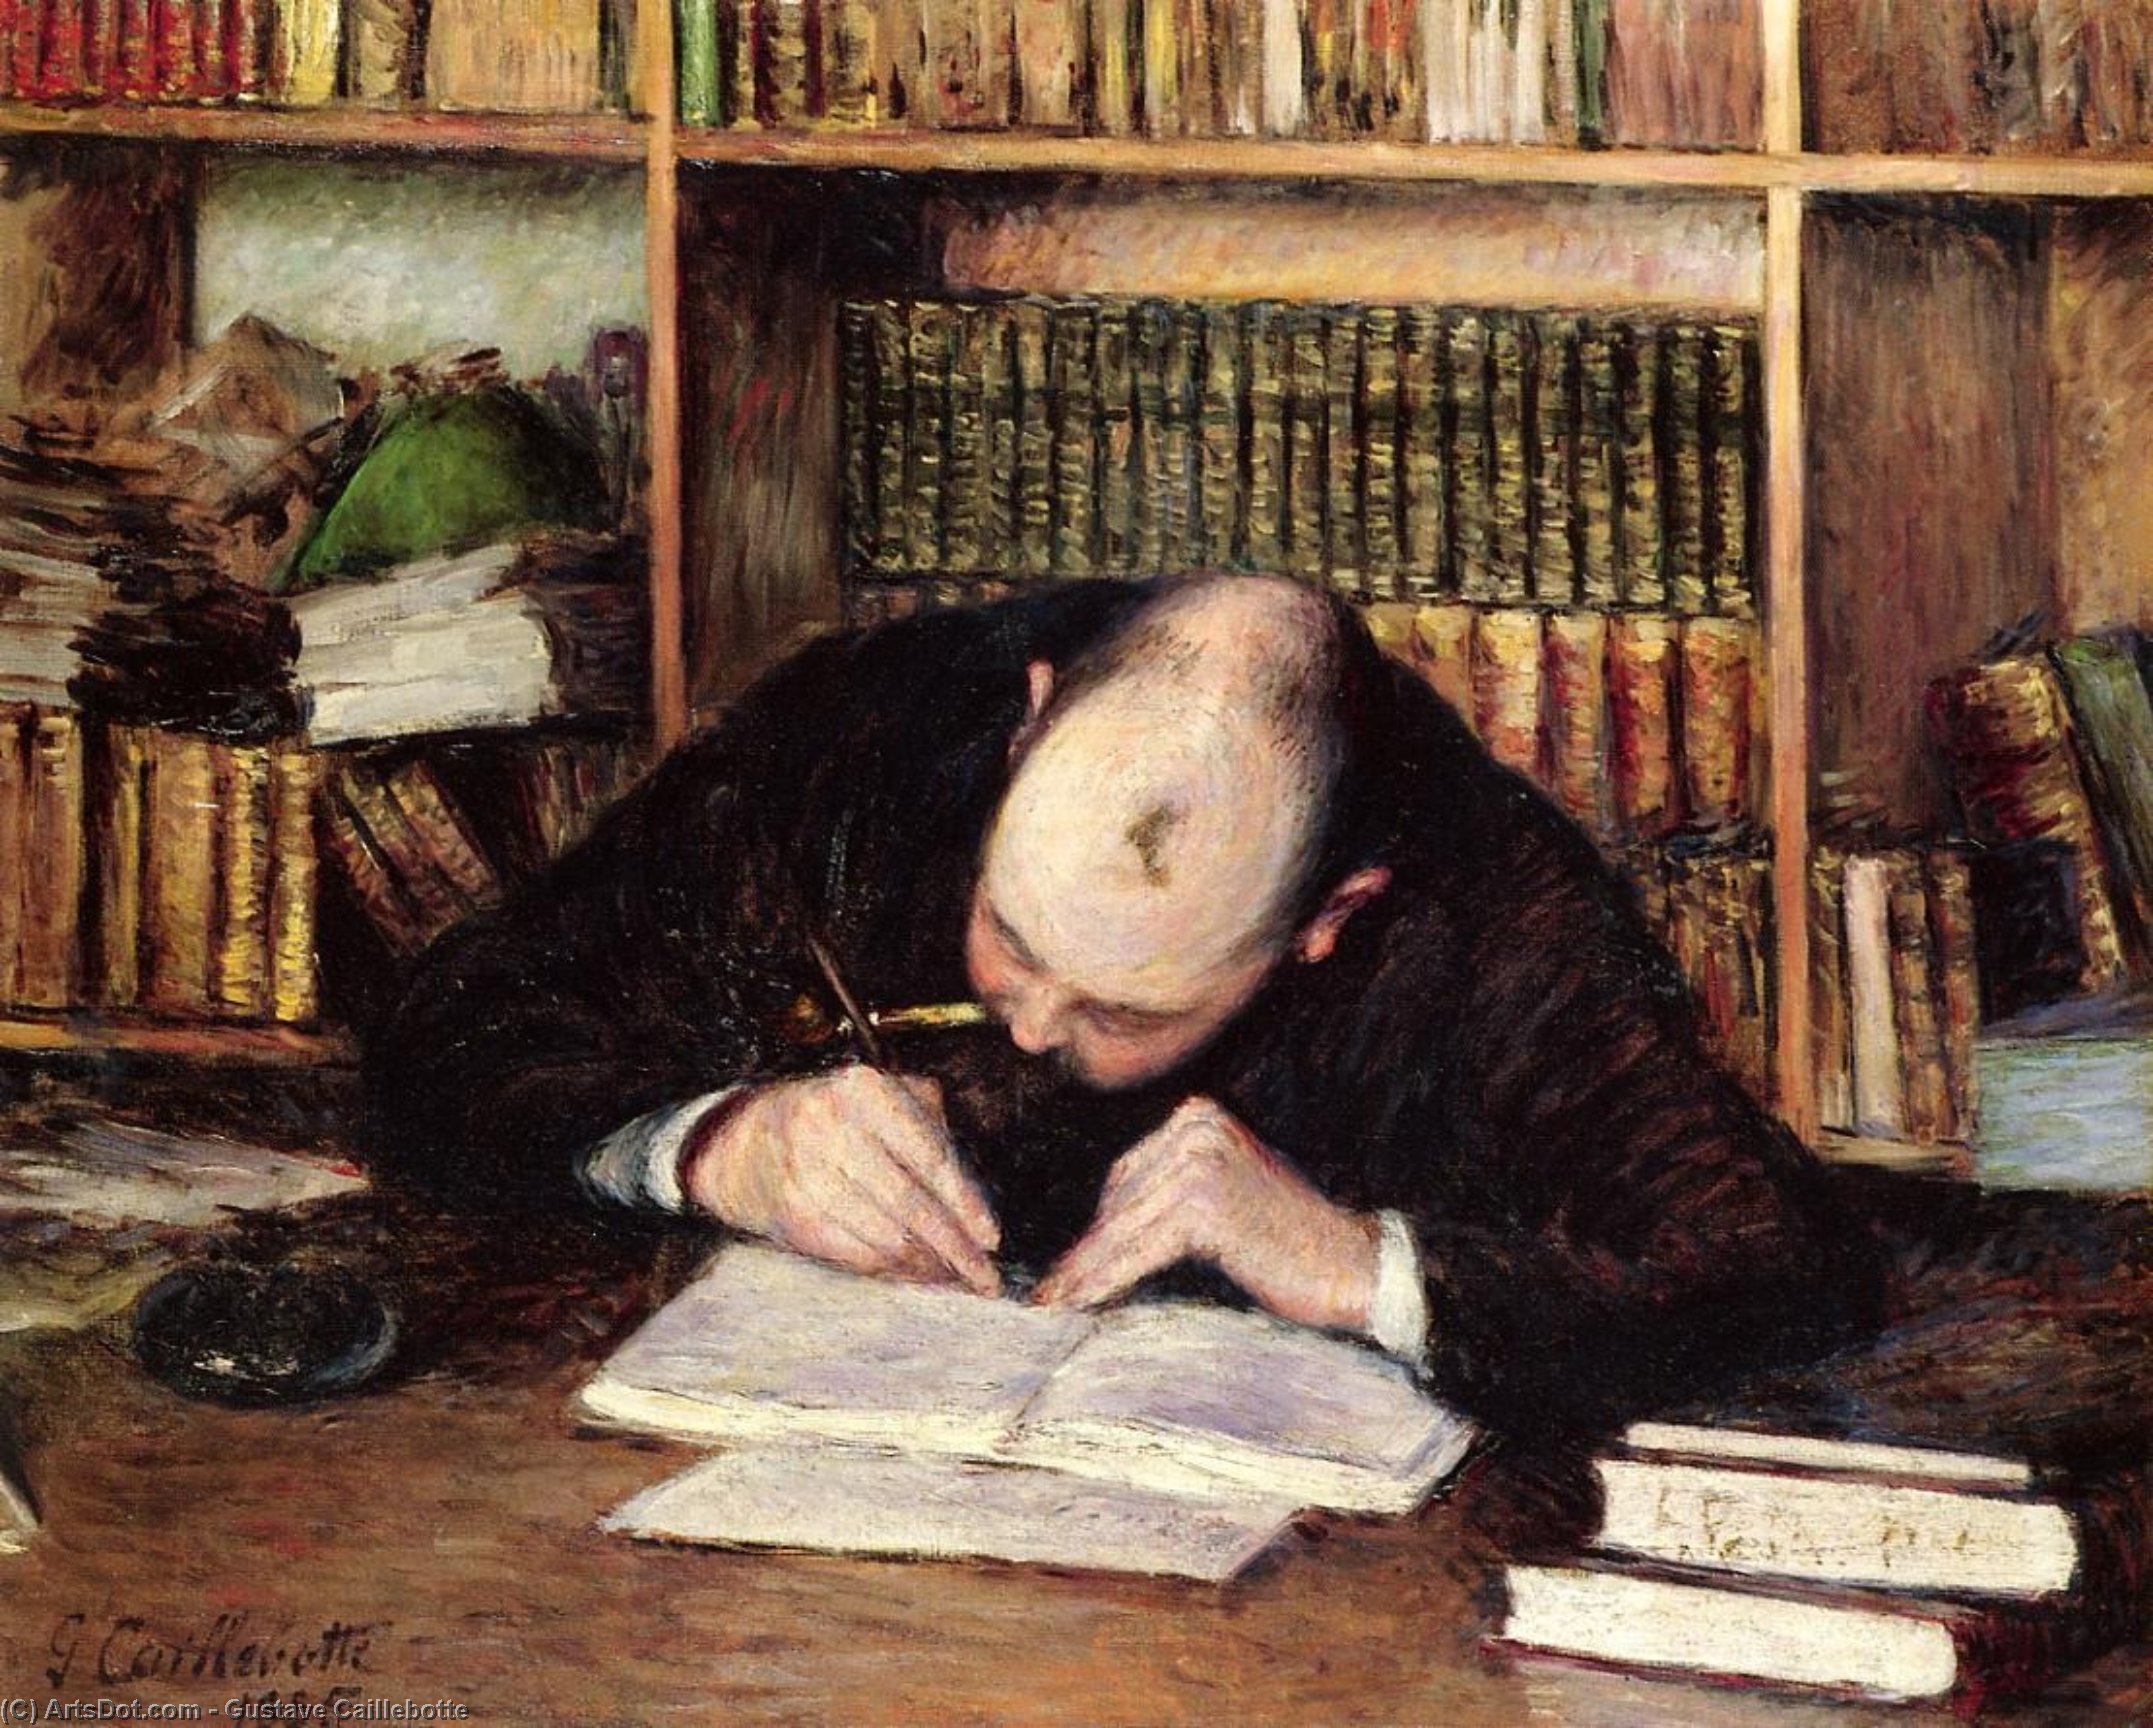 Страдающий поэт. Гюстав Кайботт портрет. Гюстав Кайботт Gustave Caillebotte (1848 — 1894). Писарь 19 век. Писатель в живописи.